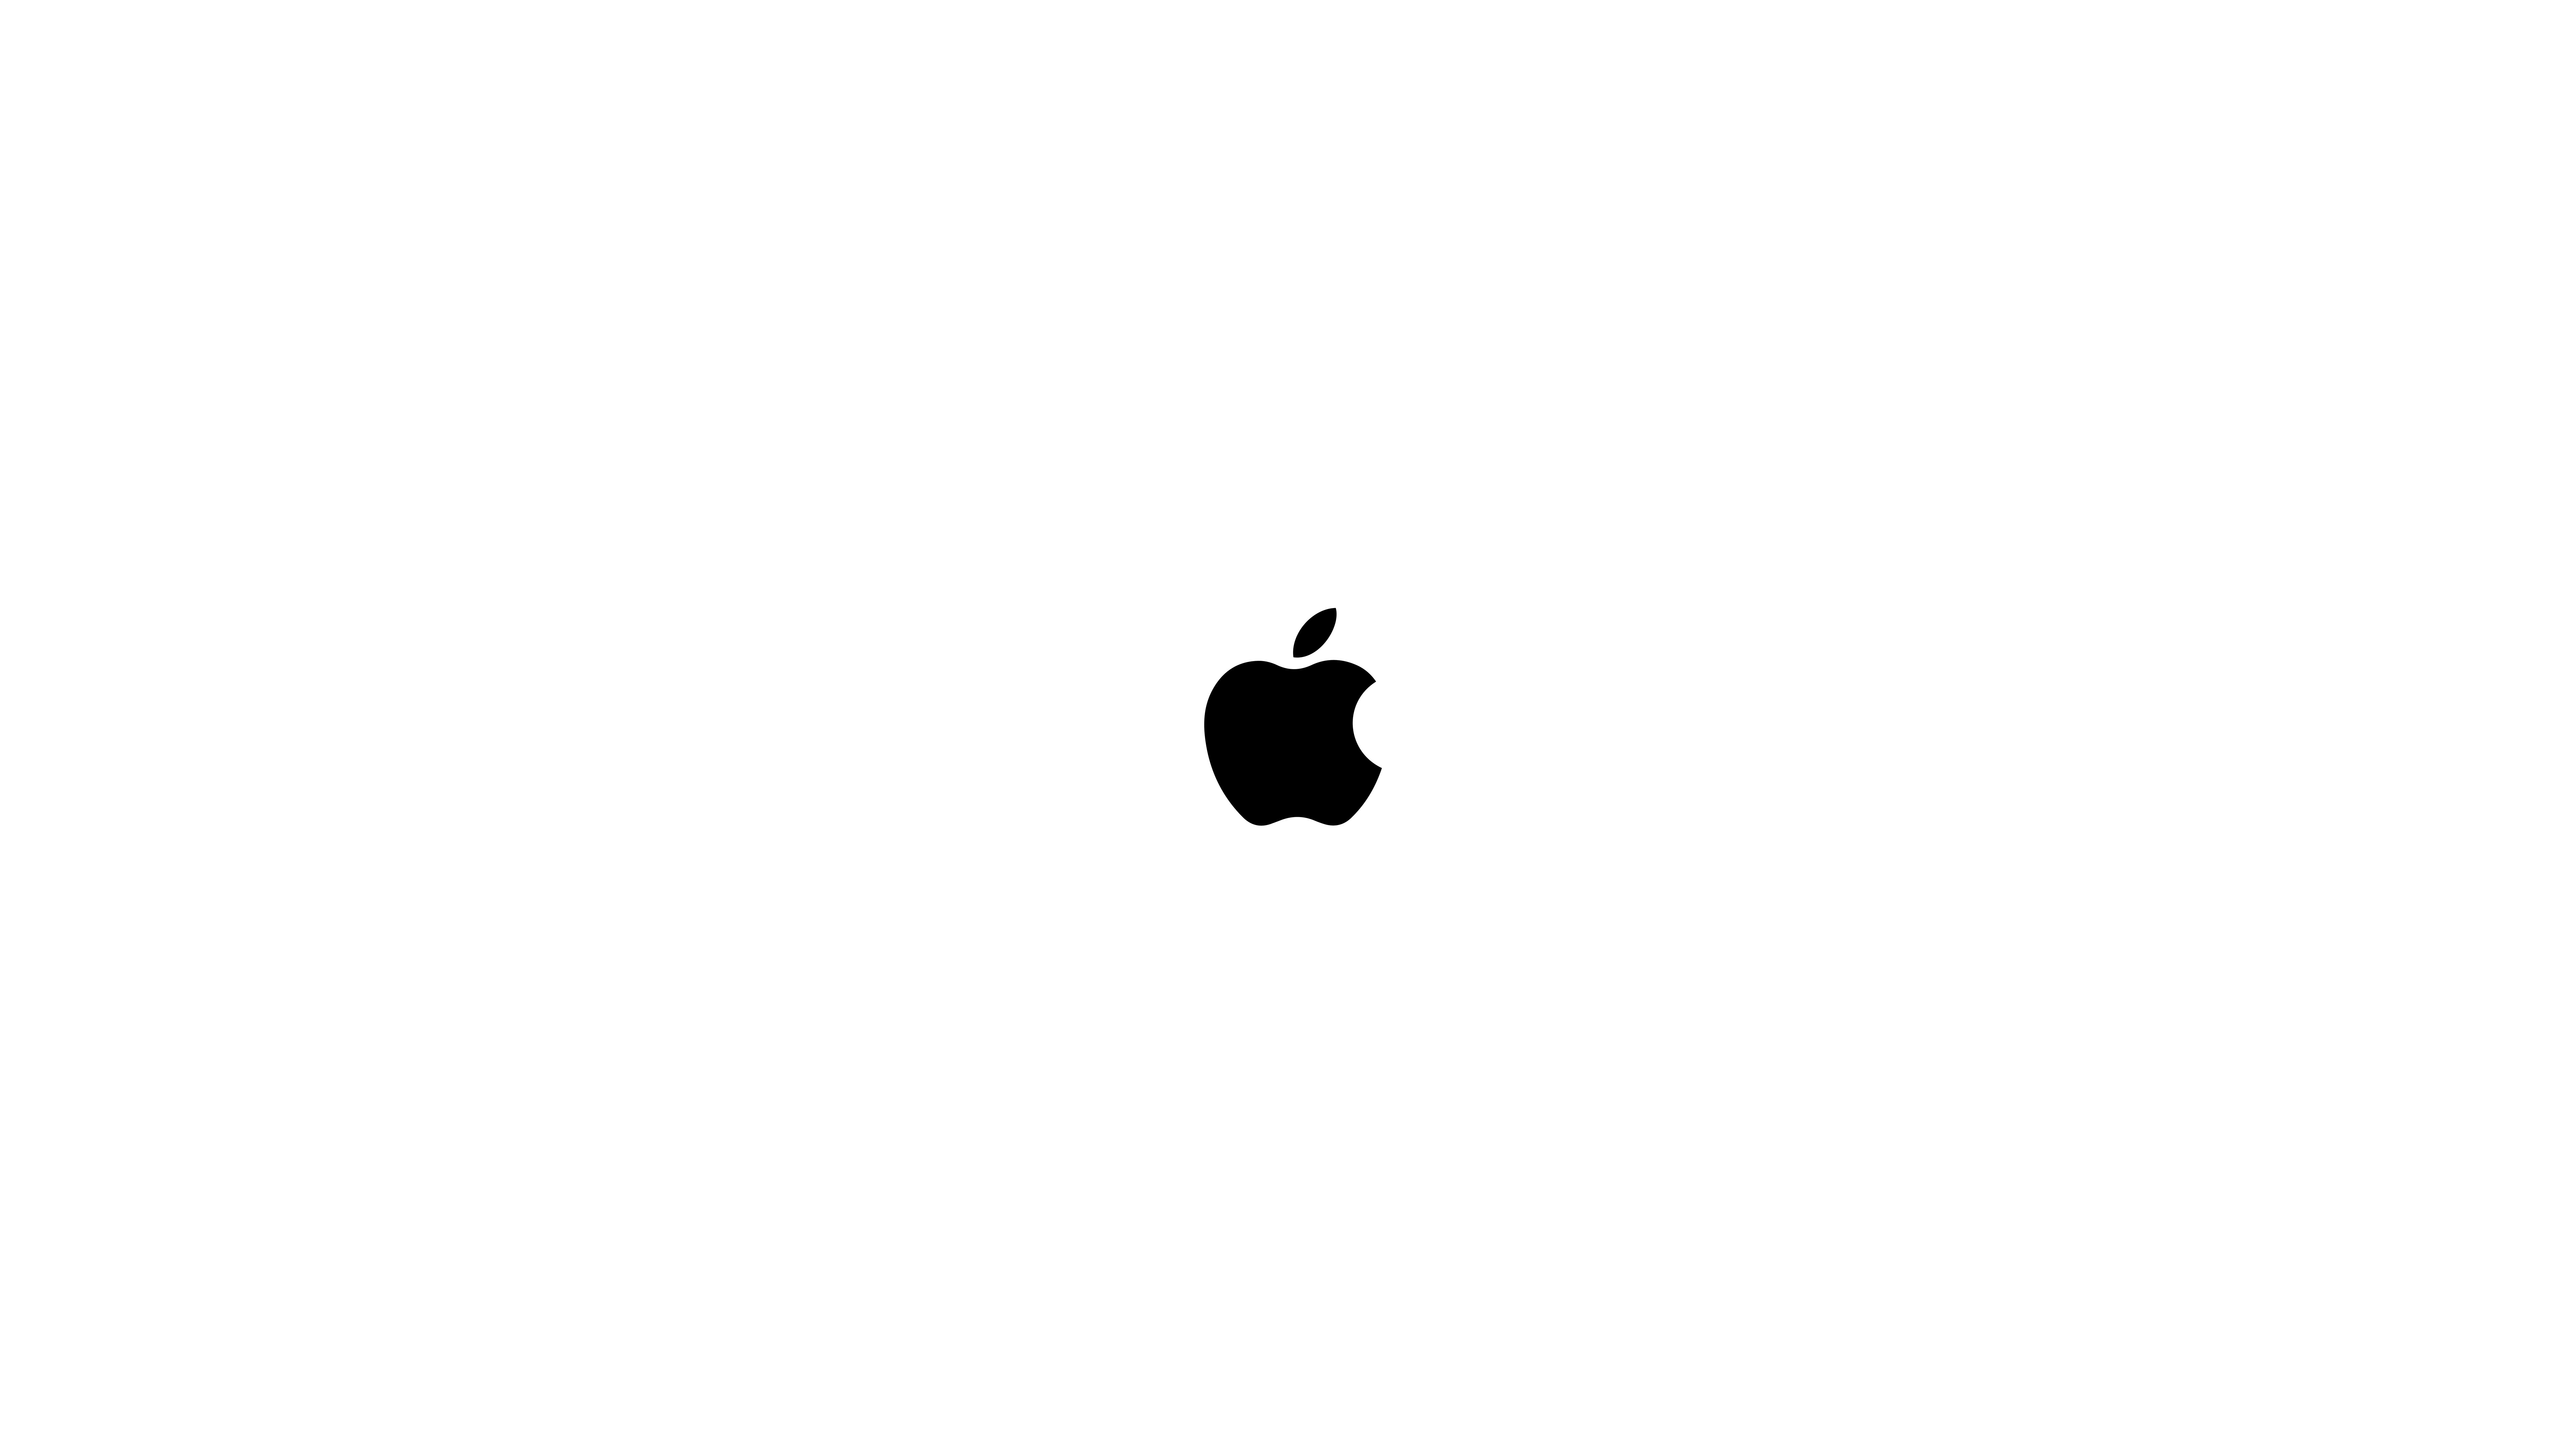 White On Black Background Apple Logo - Black Apple Logo UHD 8K Wallpaper | Pixelz